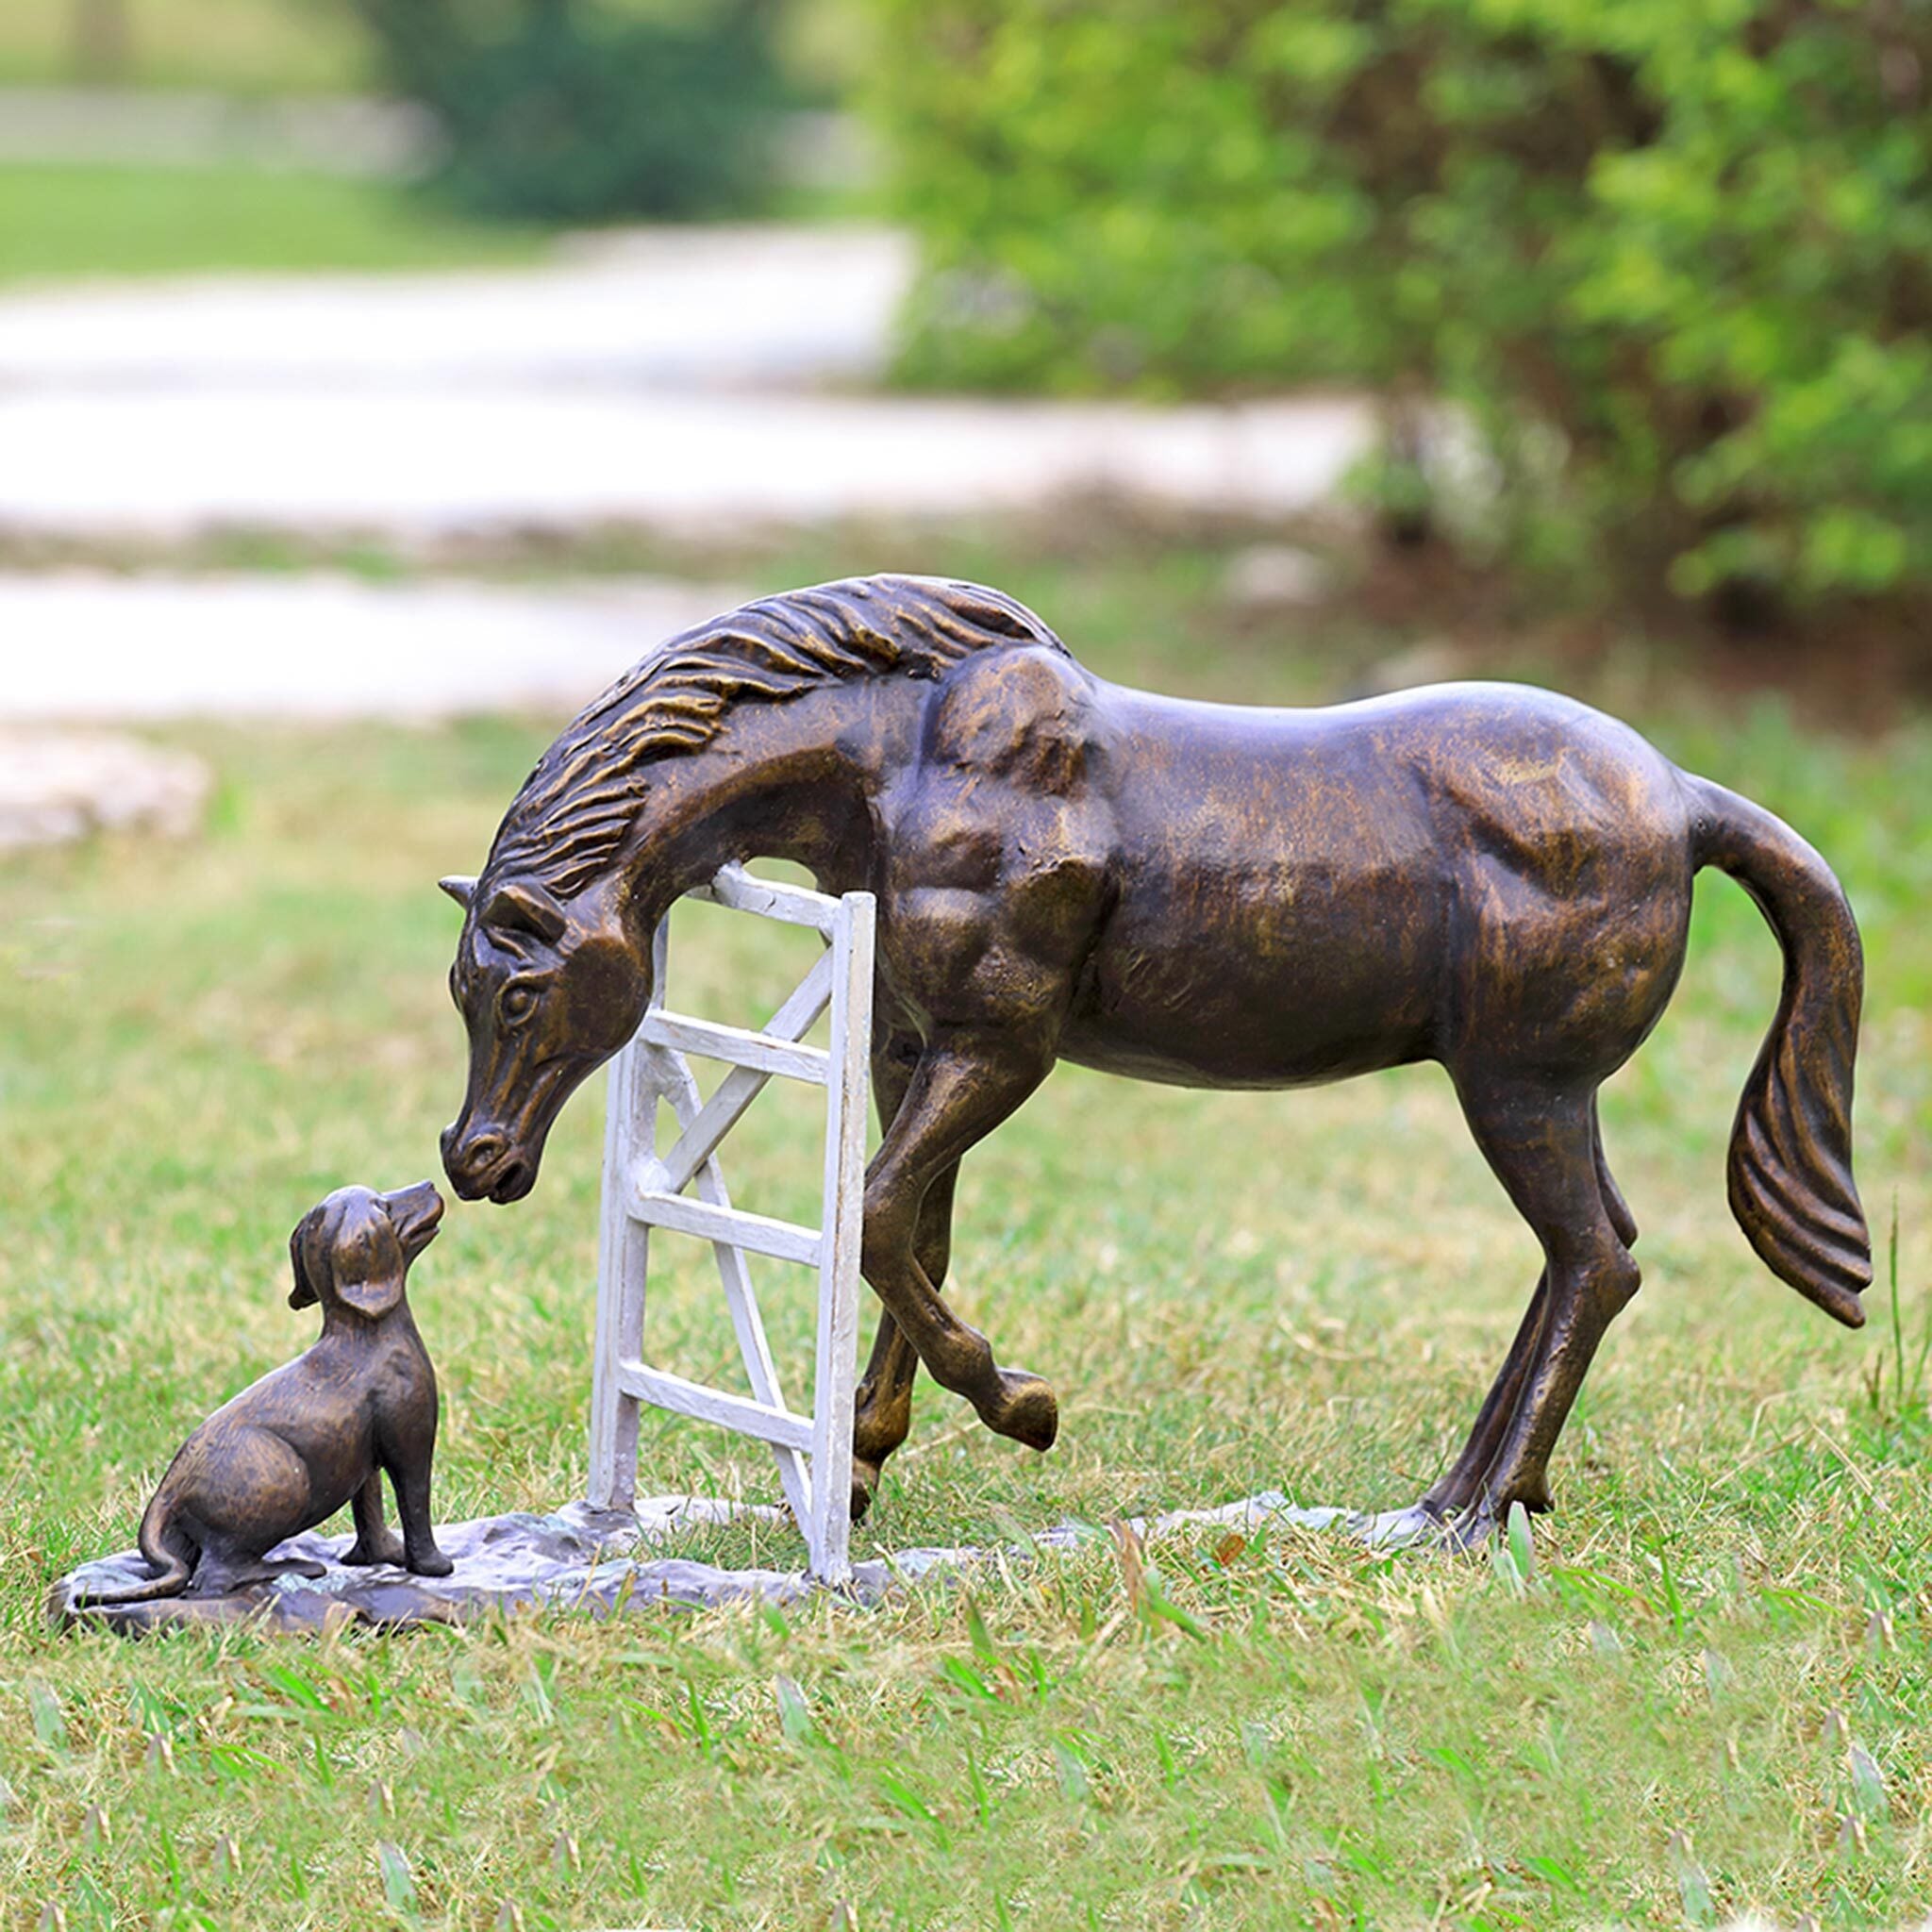 Barnyard Pals (Horse & Dog) Garden Sculpture